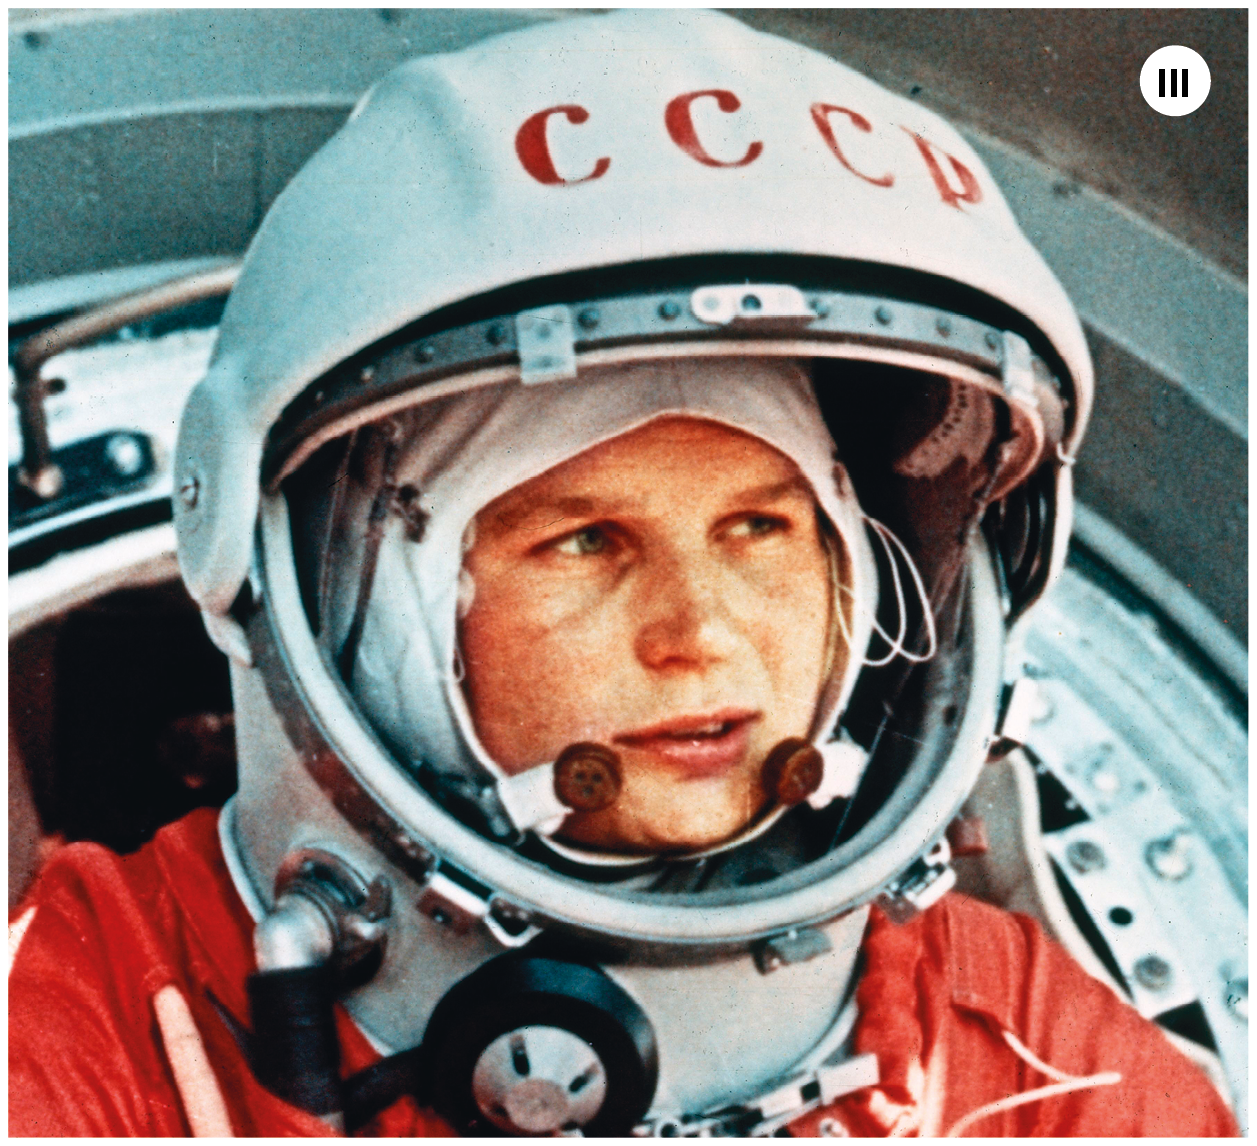 Imagem três. Fotografia. Uma mulher branca vista dos ombros para cima, de cabelos claros, capacete branco e roupa de astronauta com detalhes em branco e vermelho. Ela olha para a direita, ao longe. Ao fundo, objeto arredondado em ferro de cor cinza.